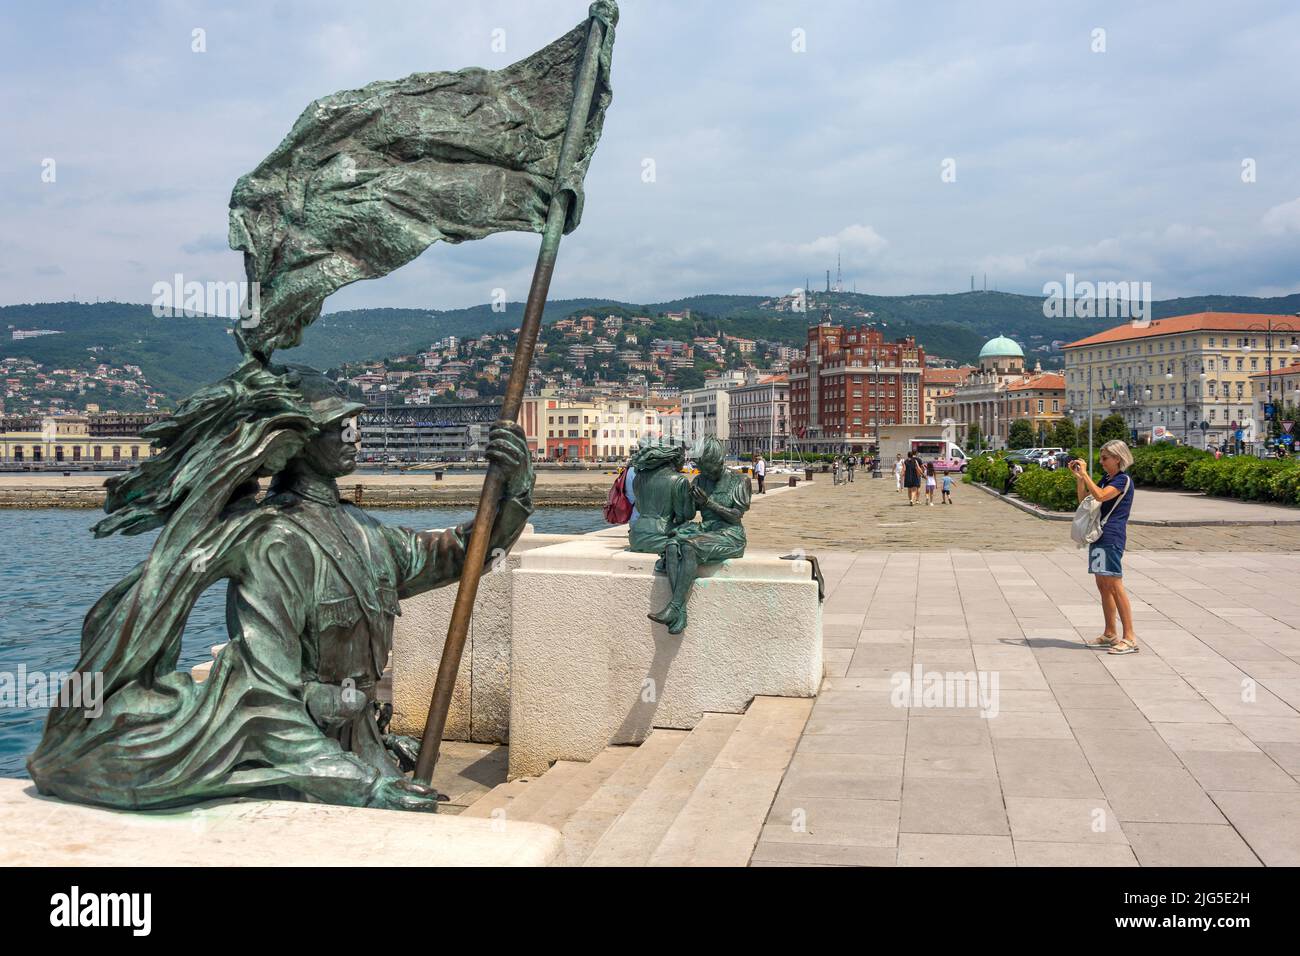 La Ragazze di Trieste sculture sul lungomare, Trieste, Regione Friuli Venezia Giulia, Italia Foto Stock